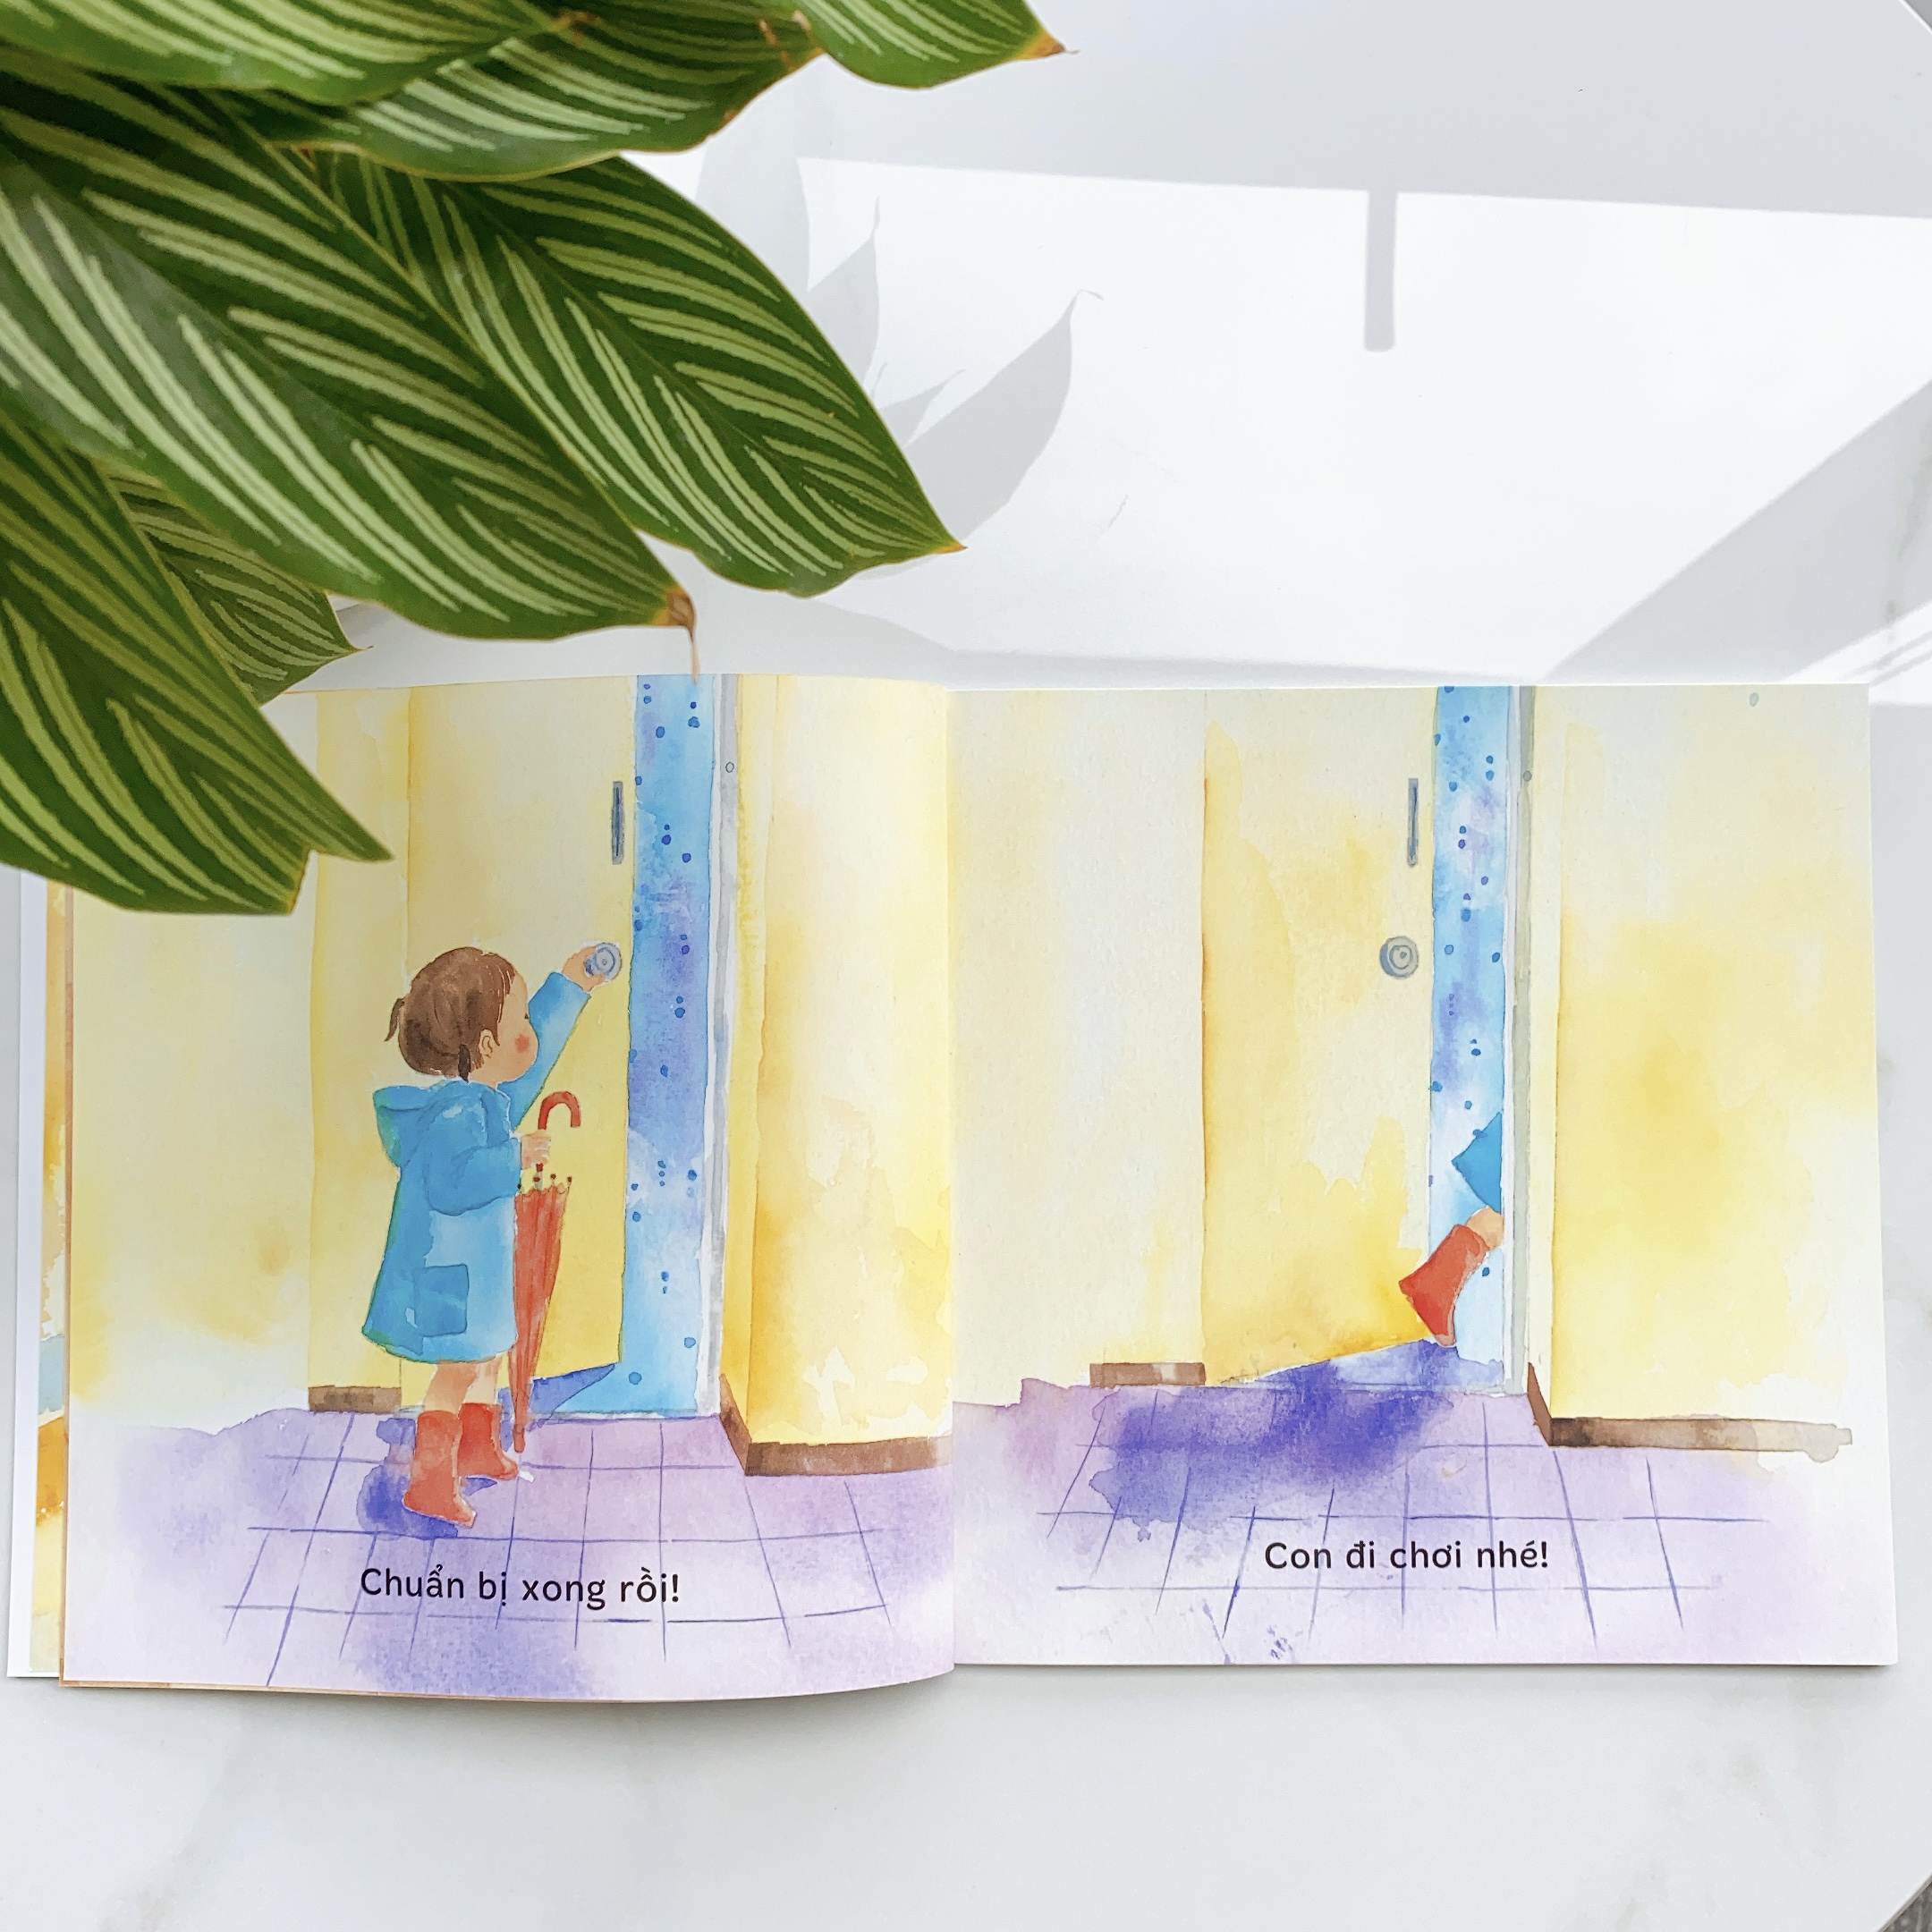 Sách Ehon cho bé 1-3 tuổi - Đi dạo dưới mưa (Tranh truyện ehon Nhật Bản cho bé)